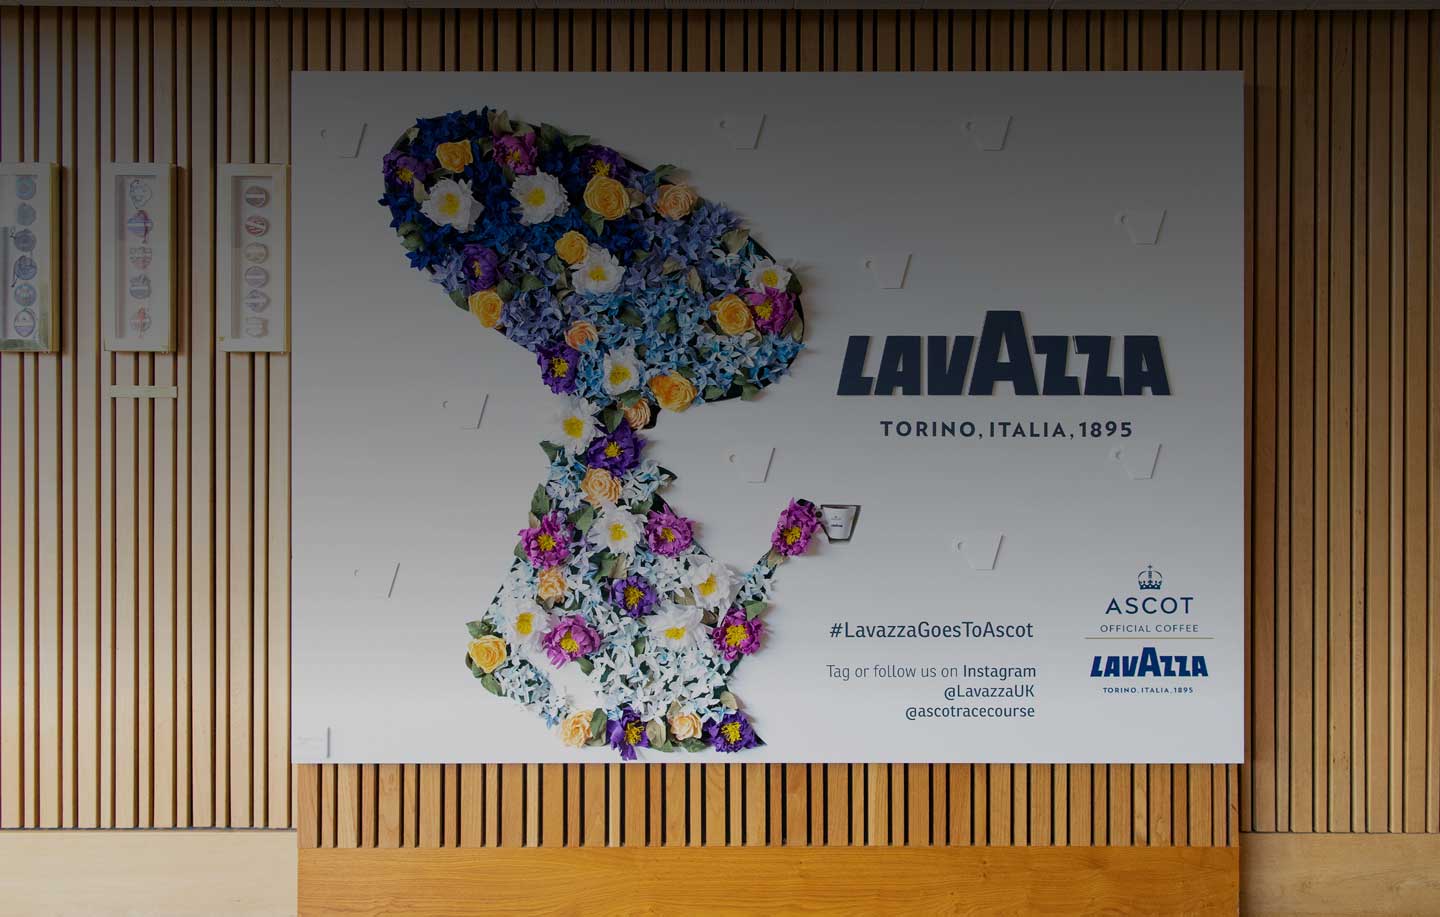 Royal Ascot y Lavazza: compartir los mismos valores